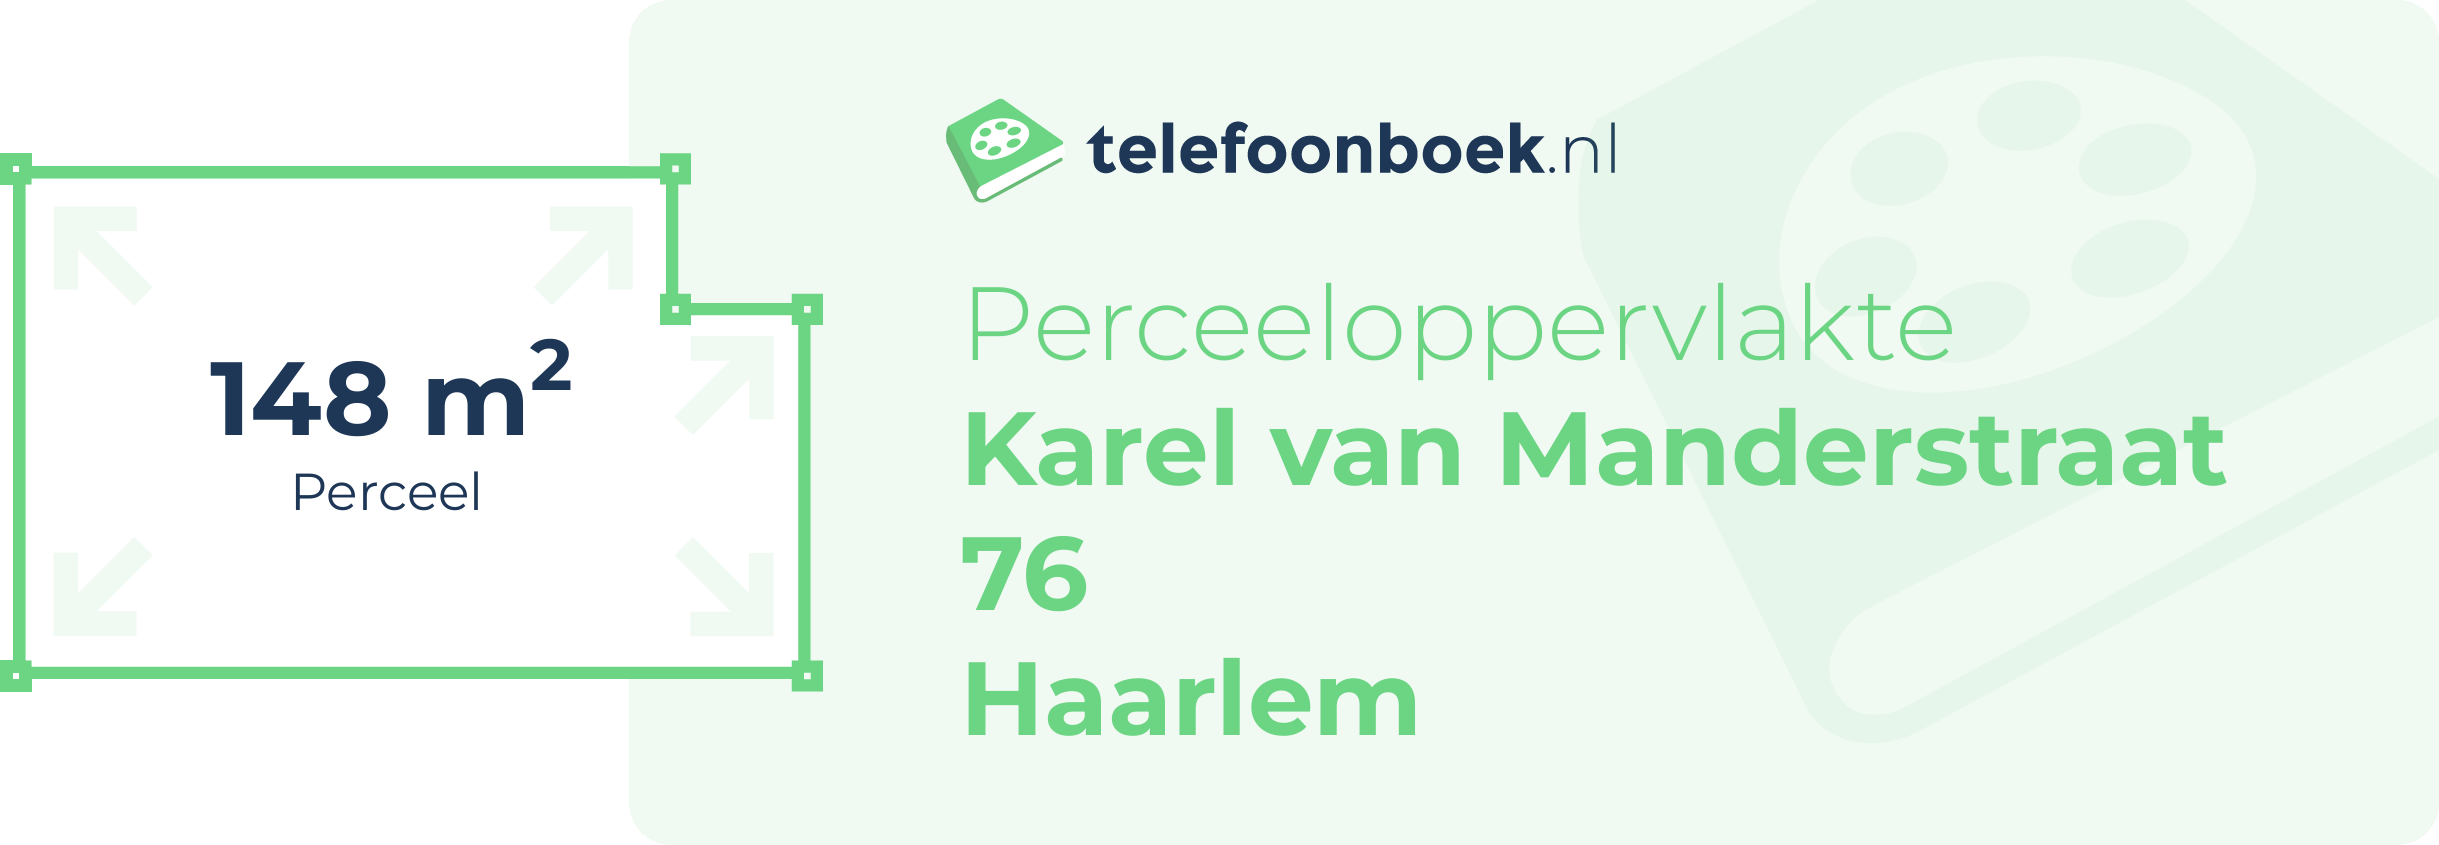 Perceeloppervlakte Karel Van Manderstraat 76 Haarlem